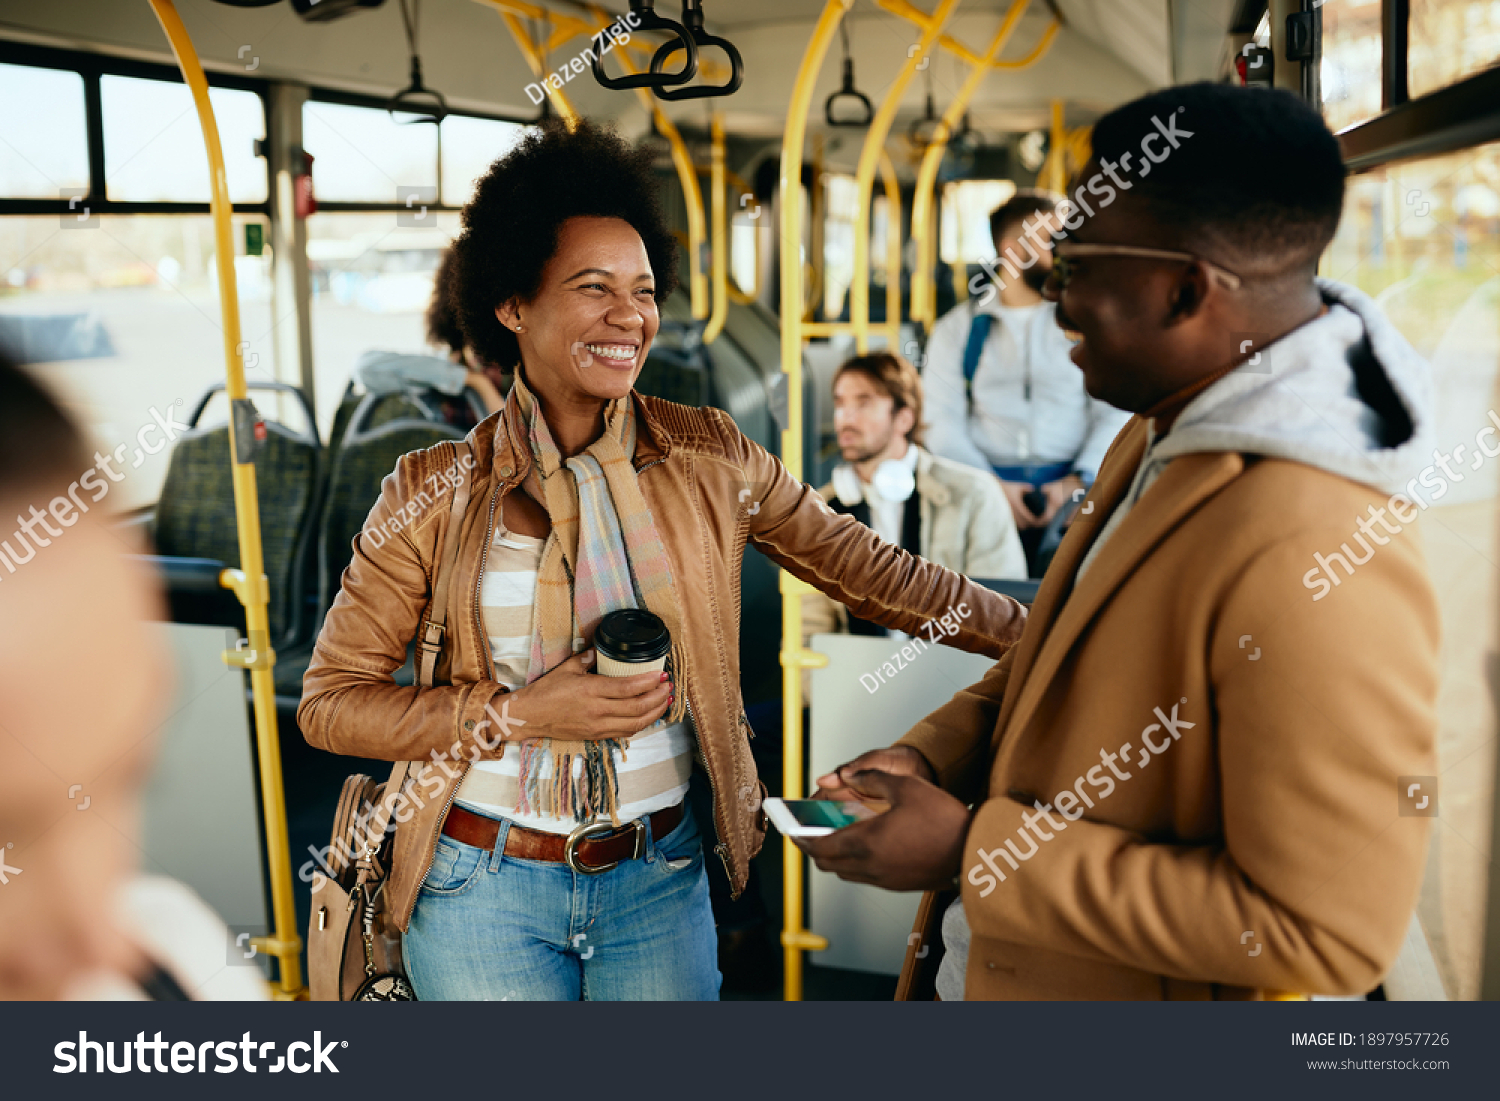 67,853 黑人情侣 图片、库存照片和矢量图 | Shutterstock